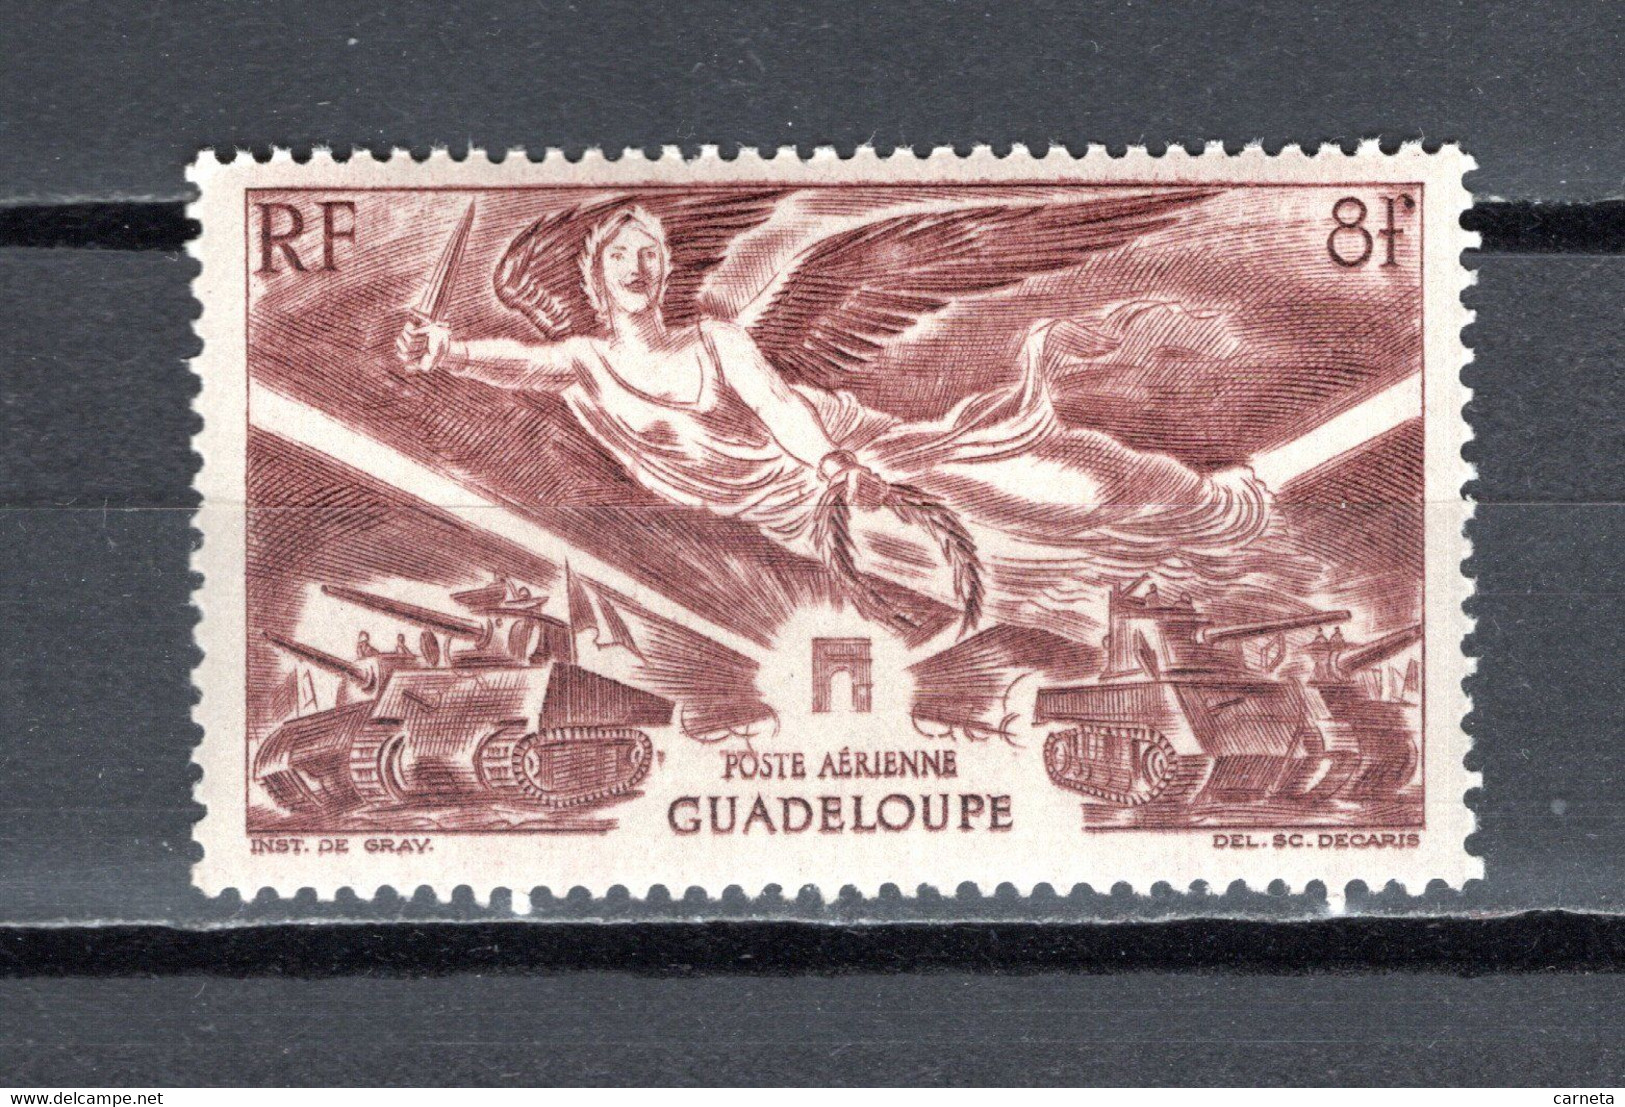 GUADELOUPE PA N° 6  NEUF SANS CHARNIERE COTE 1.30€  VICTOIRE   VOIR DESCRIPTION - Airmail